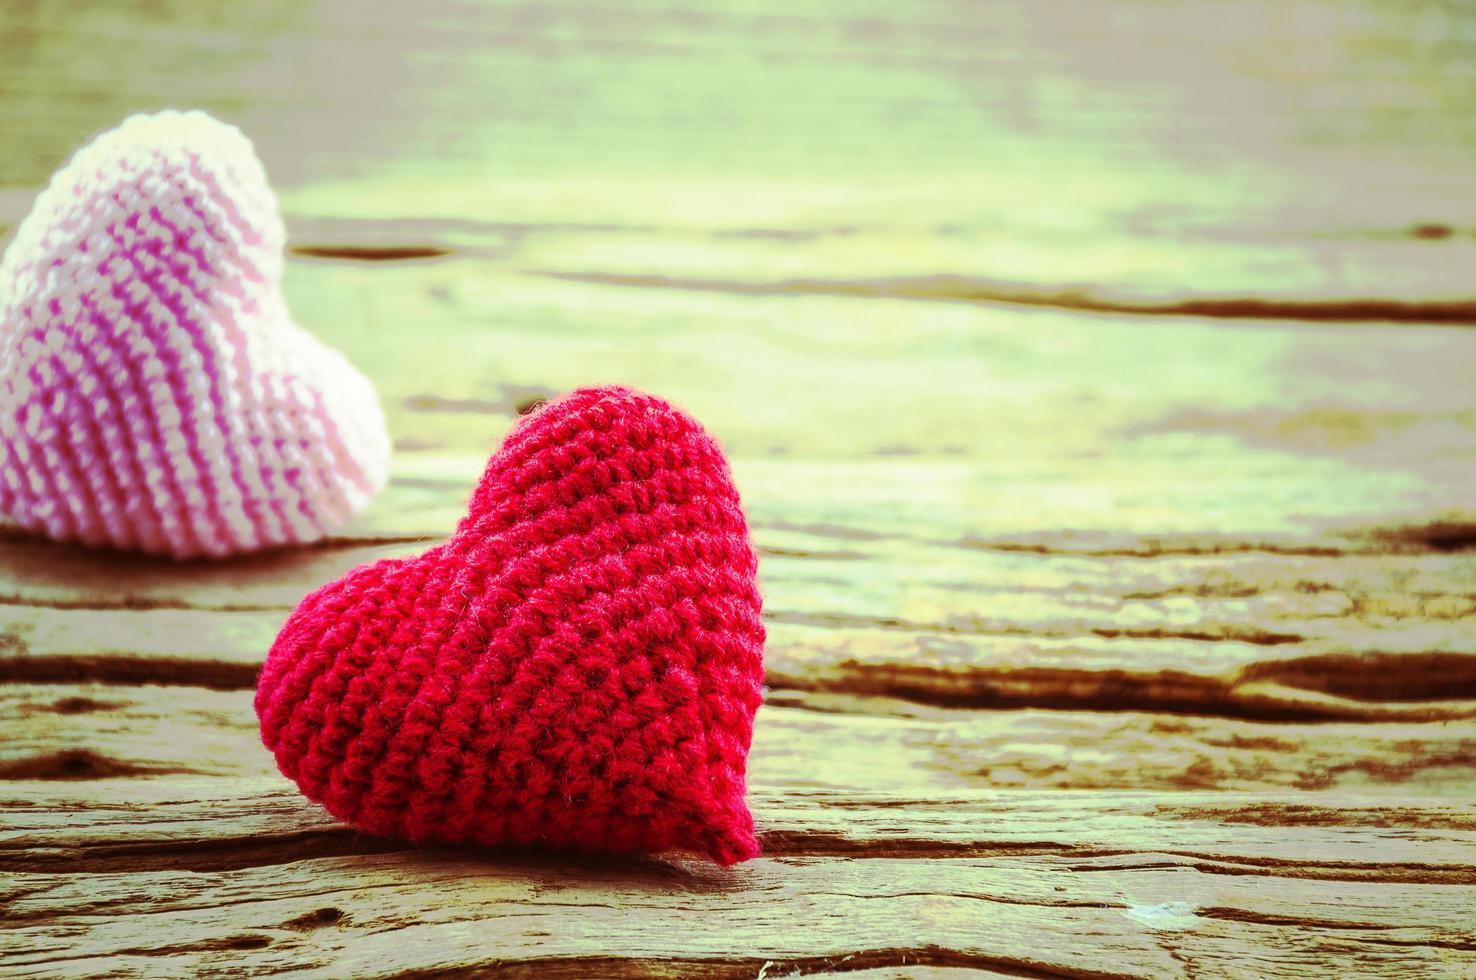 casal de coração de crochê em vermelho e rosa sobre fundo de madeira. foto é focada no coração vermelho.